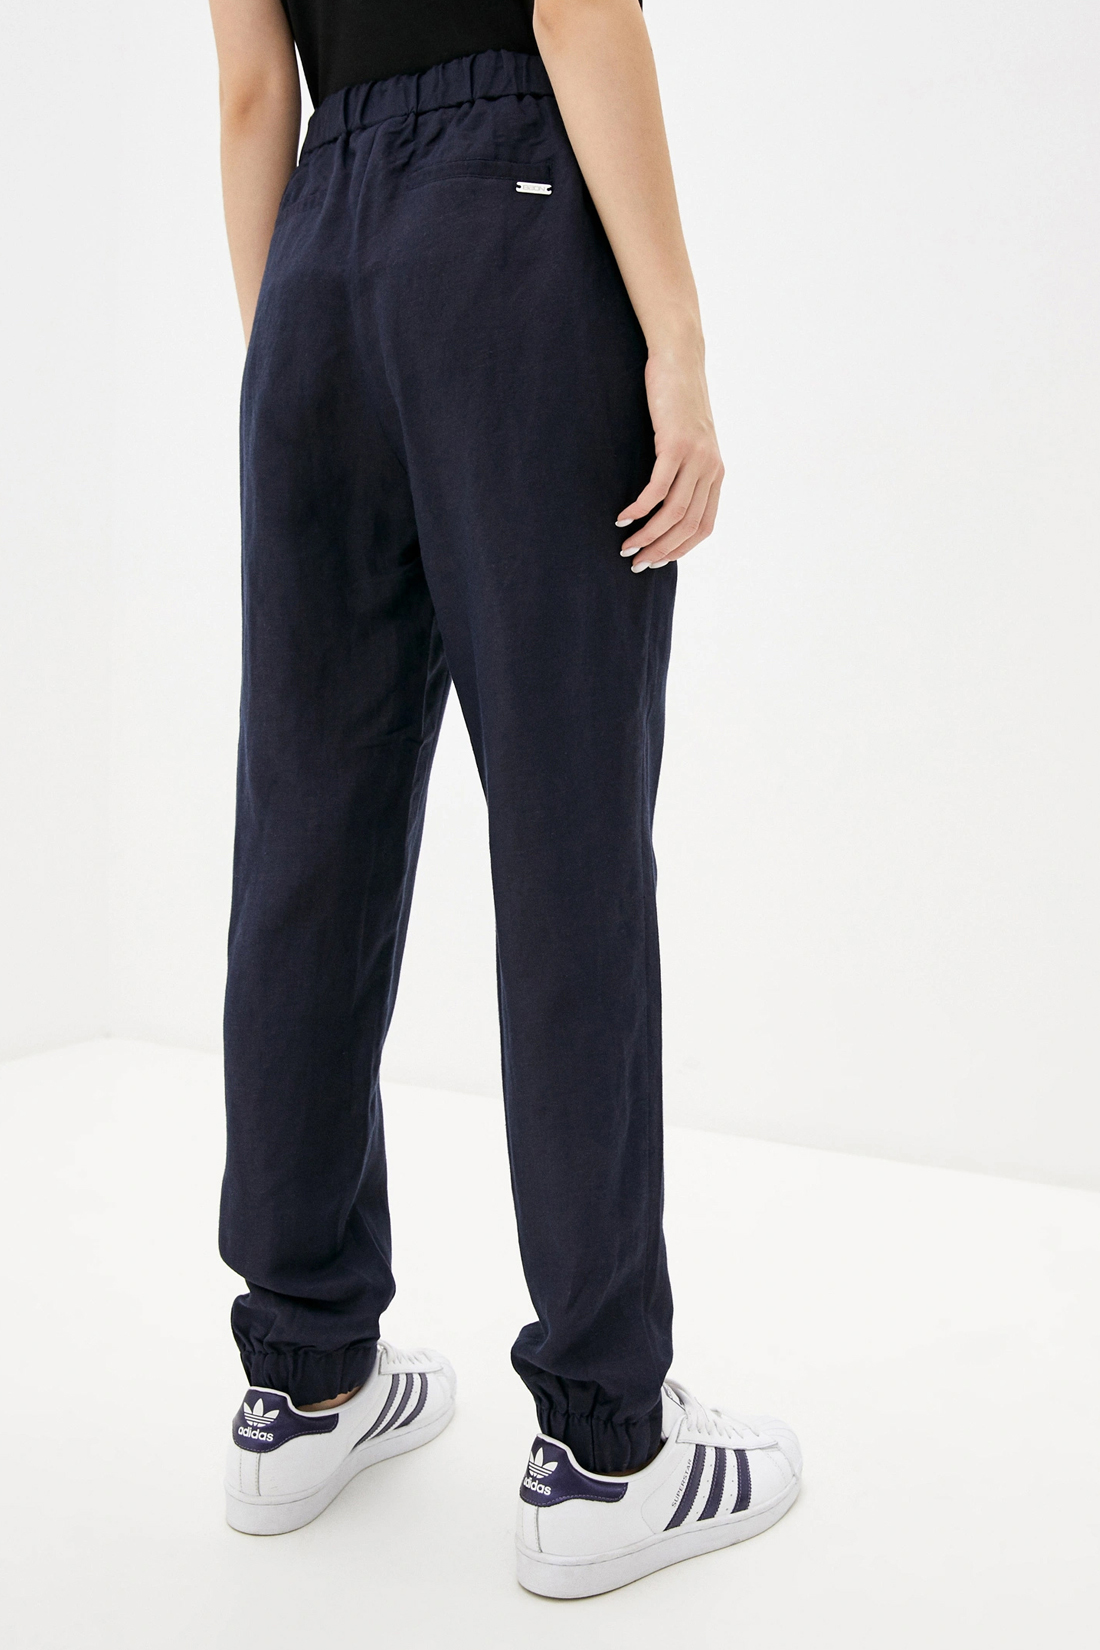 Спортивные брюки женские Baon B290048 синие XL